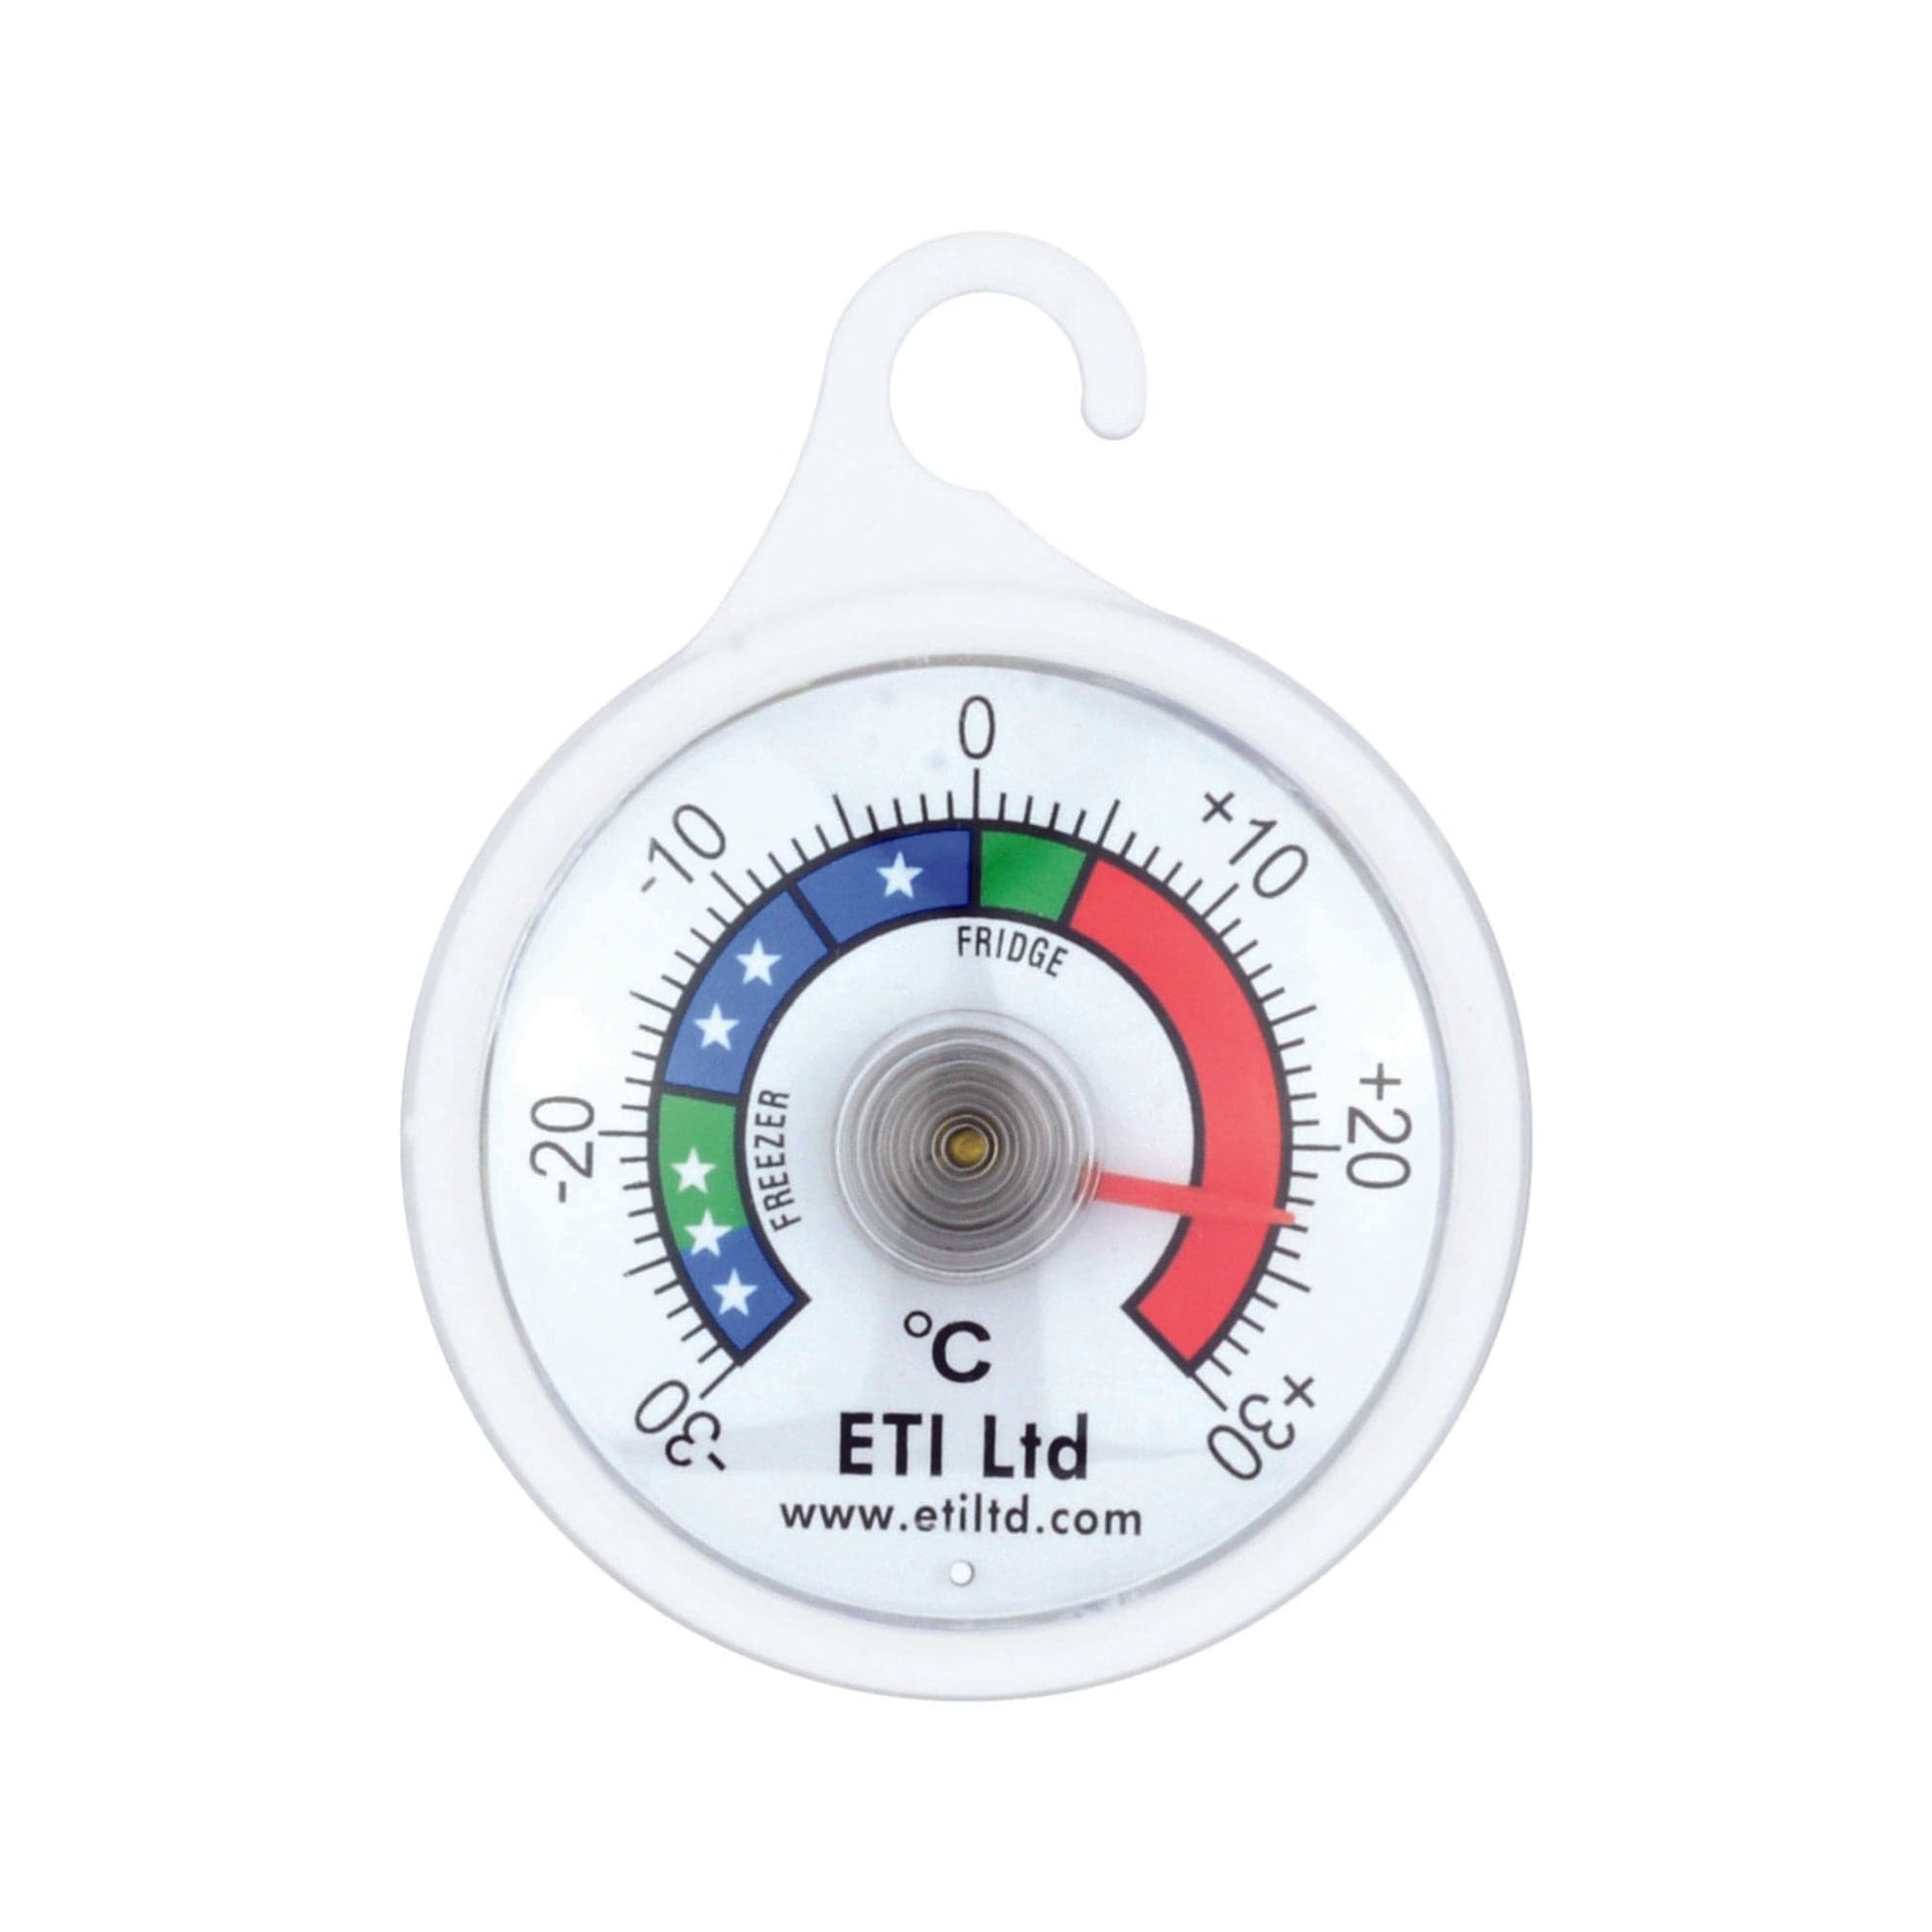 Thermomètre congélateur/réfrigérateur à cadran